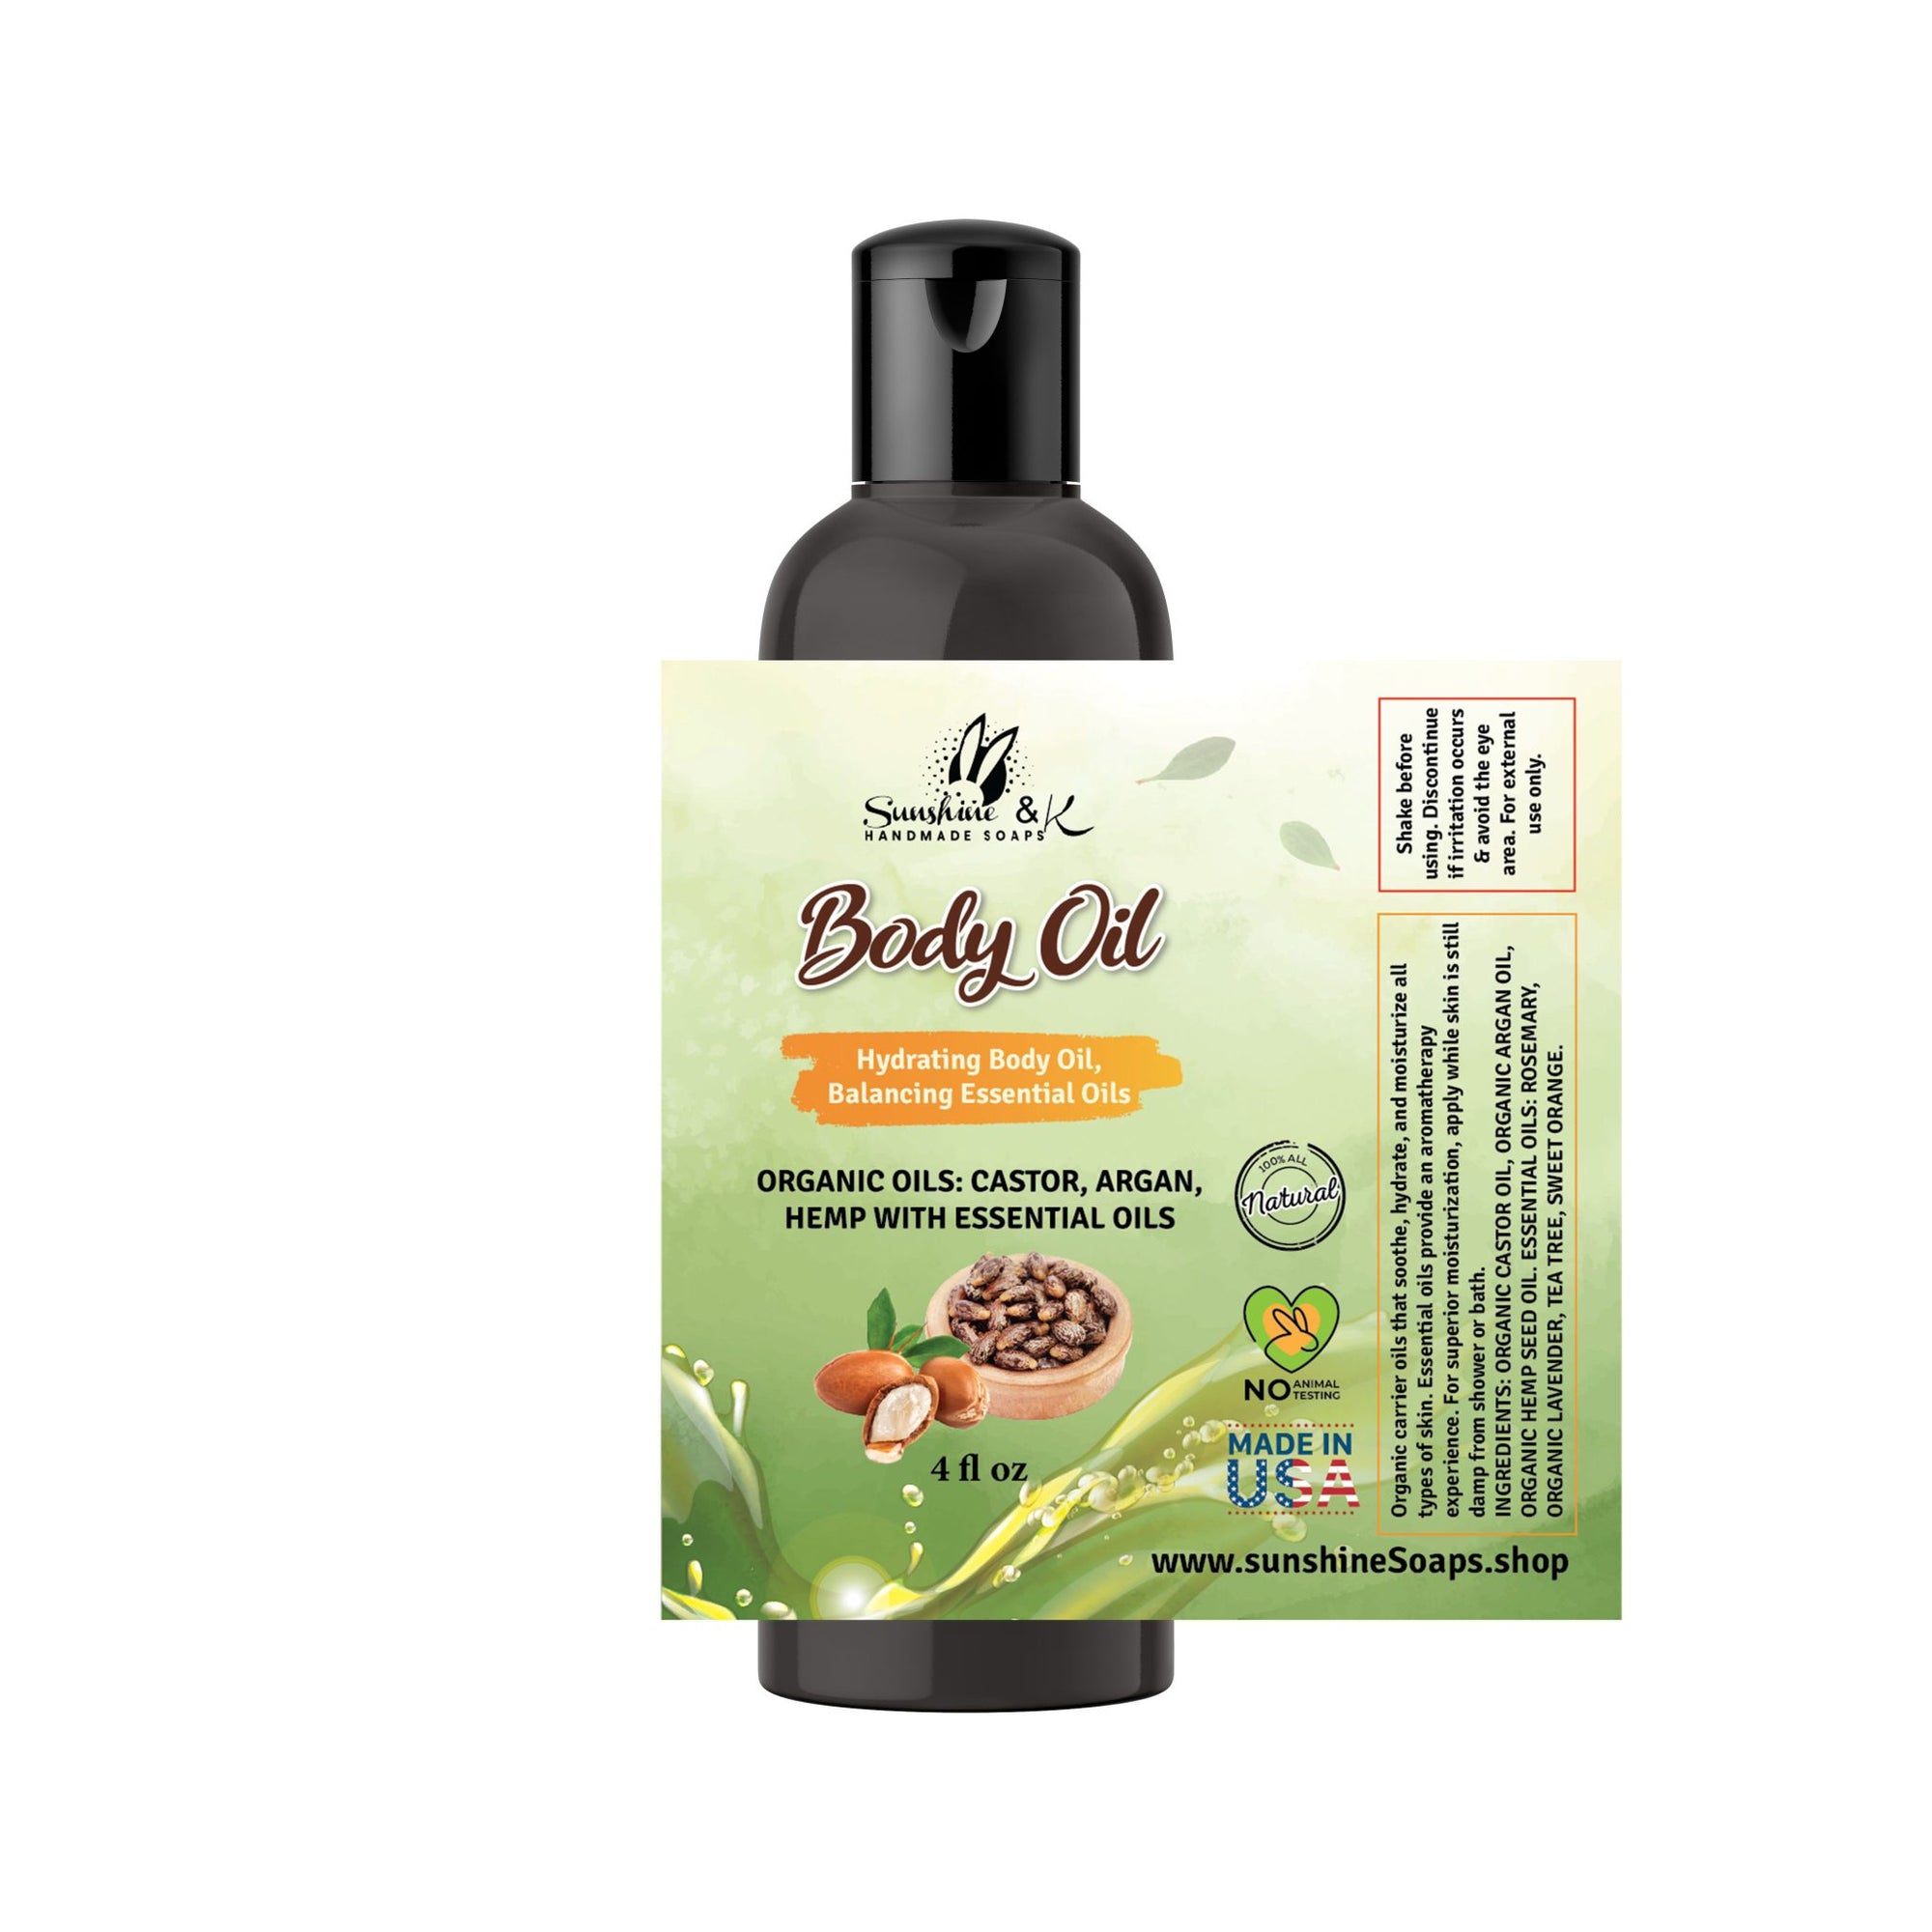 All Over Body Oil – Nourishing Body Oil – Organic Castor Oil Organic Hemp Oil w/Essential Oils